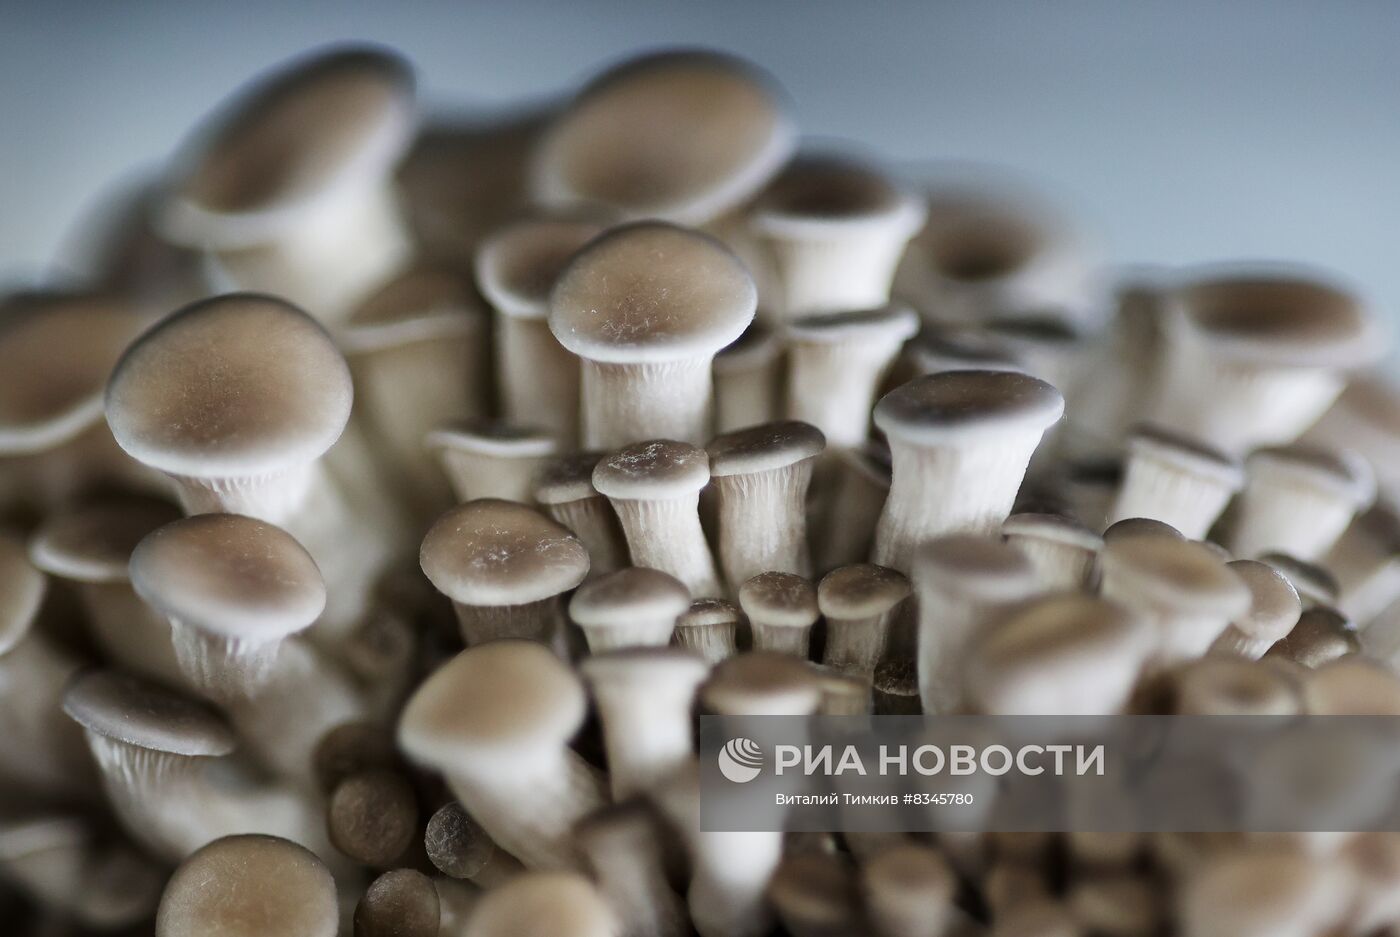 Выращивание грибов сетью супермаркетов "Магнит" в Краснодарском крае